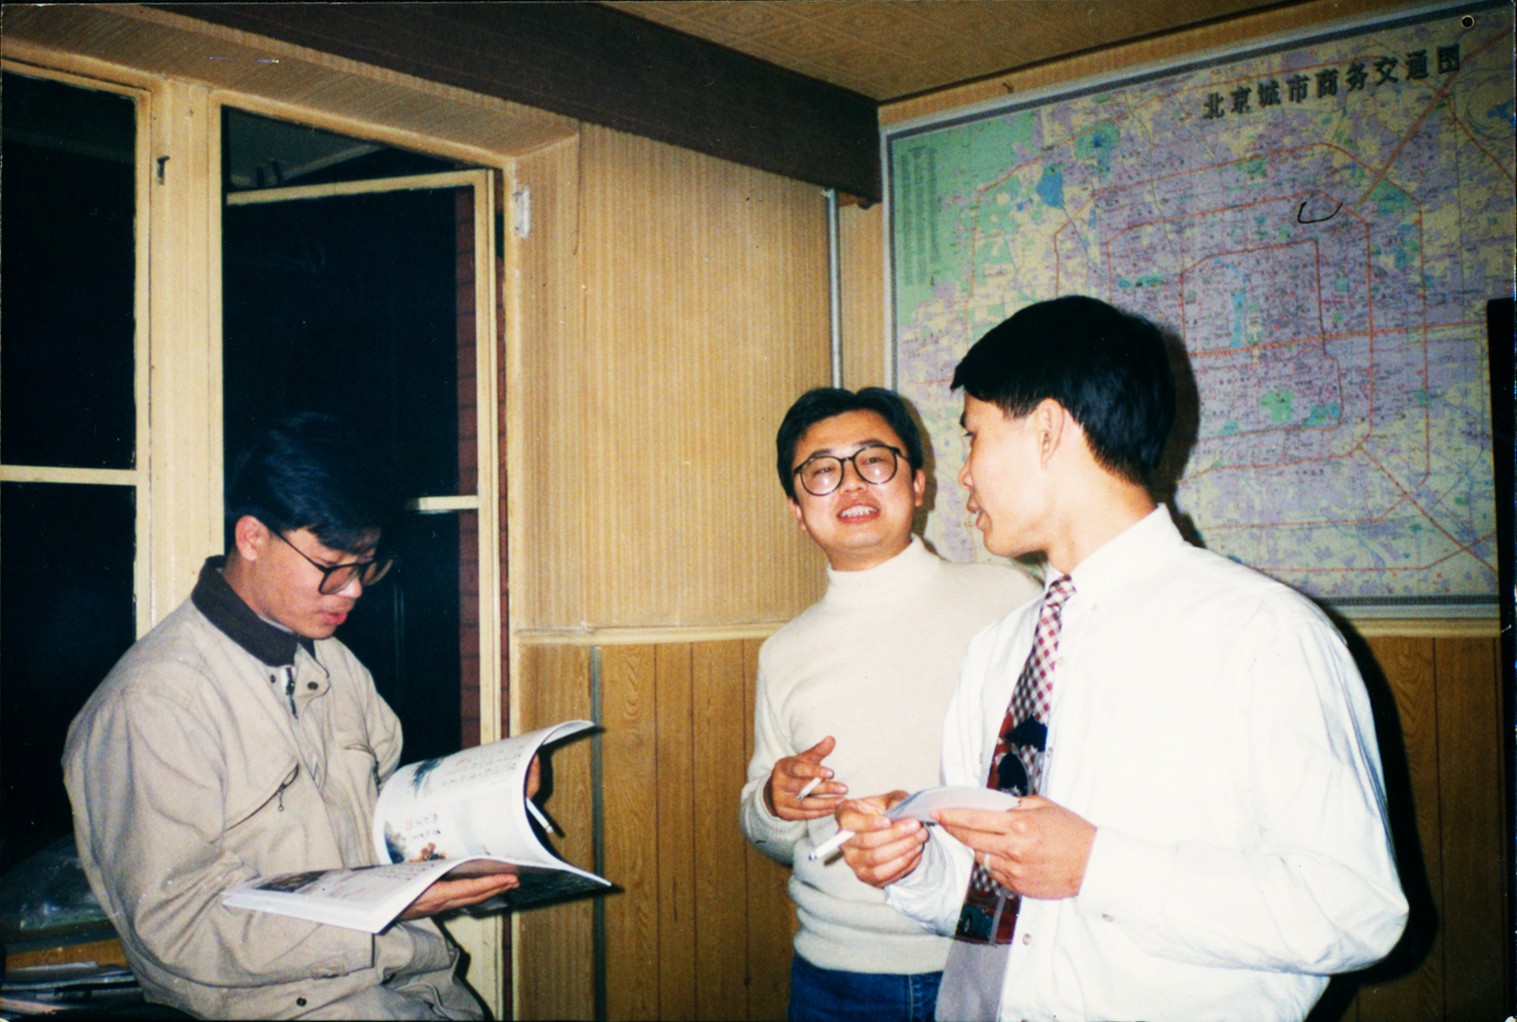 卢俊舟+陈忠康+杨文涛+1995年-2